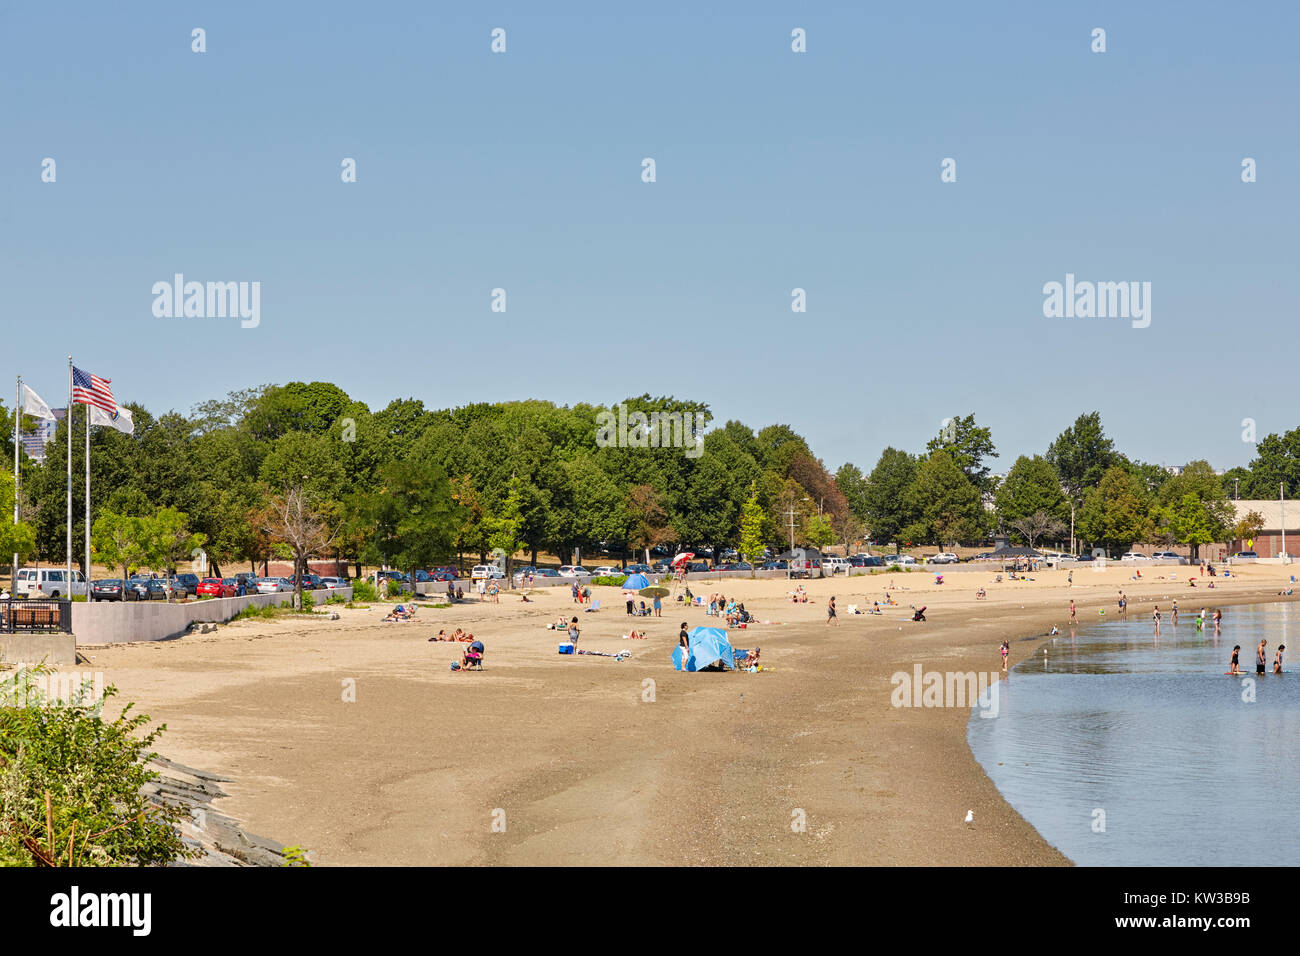 La plage de la baie de Plaisance près de Castle Island, South Boston, Massachusetts, USA Banque D'Images